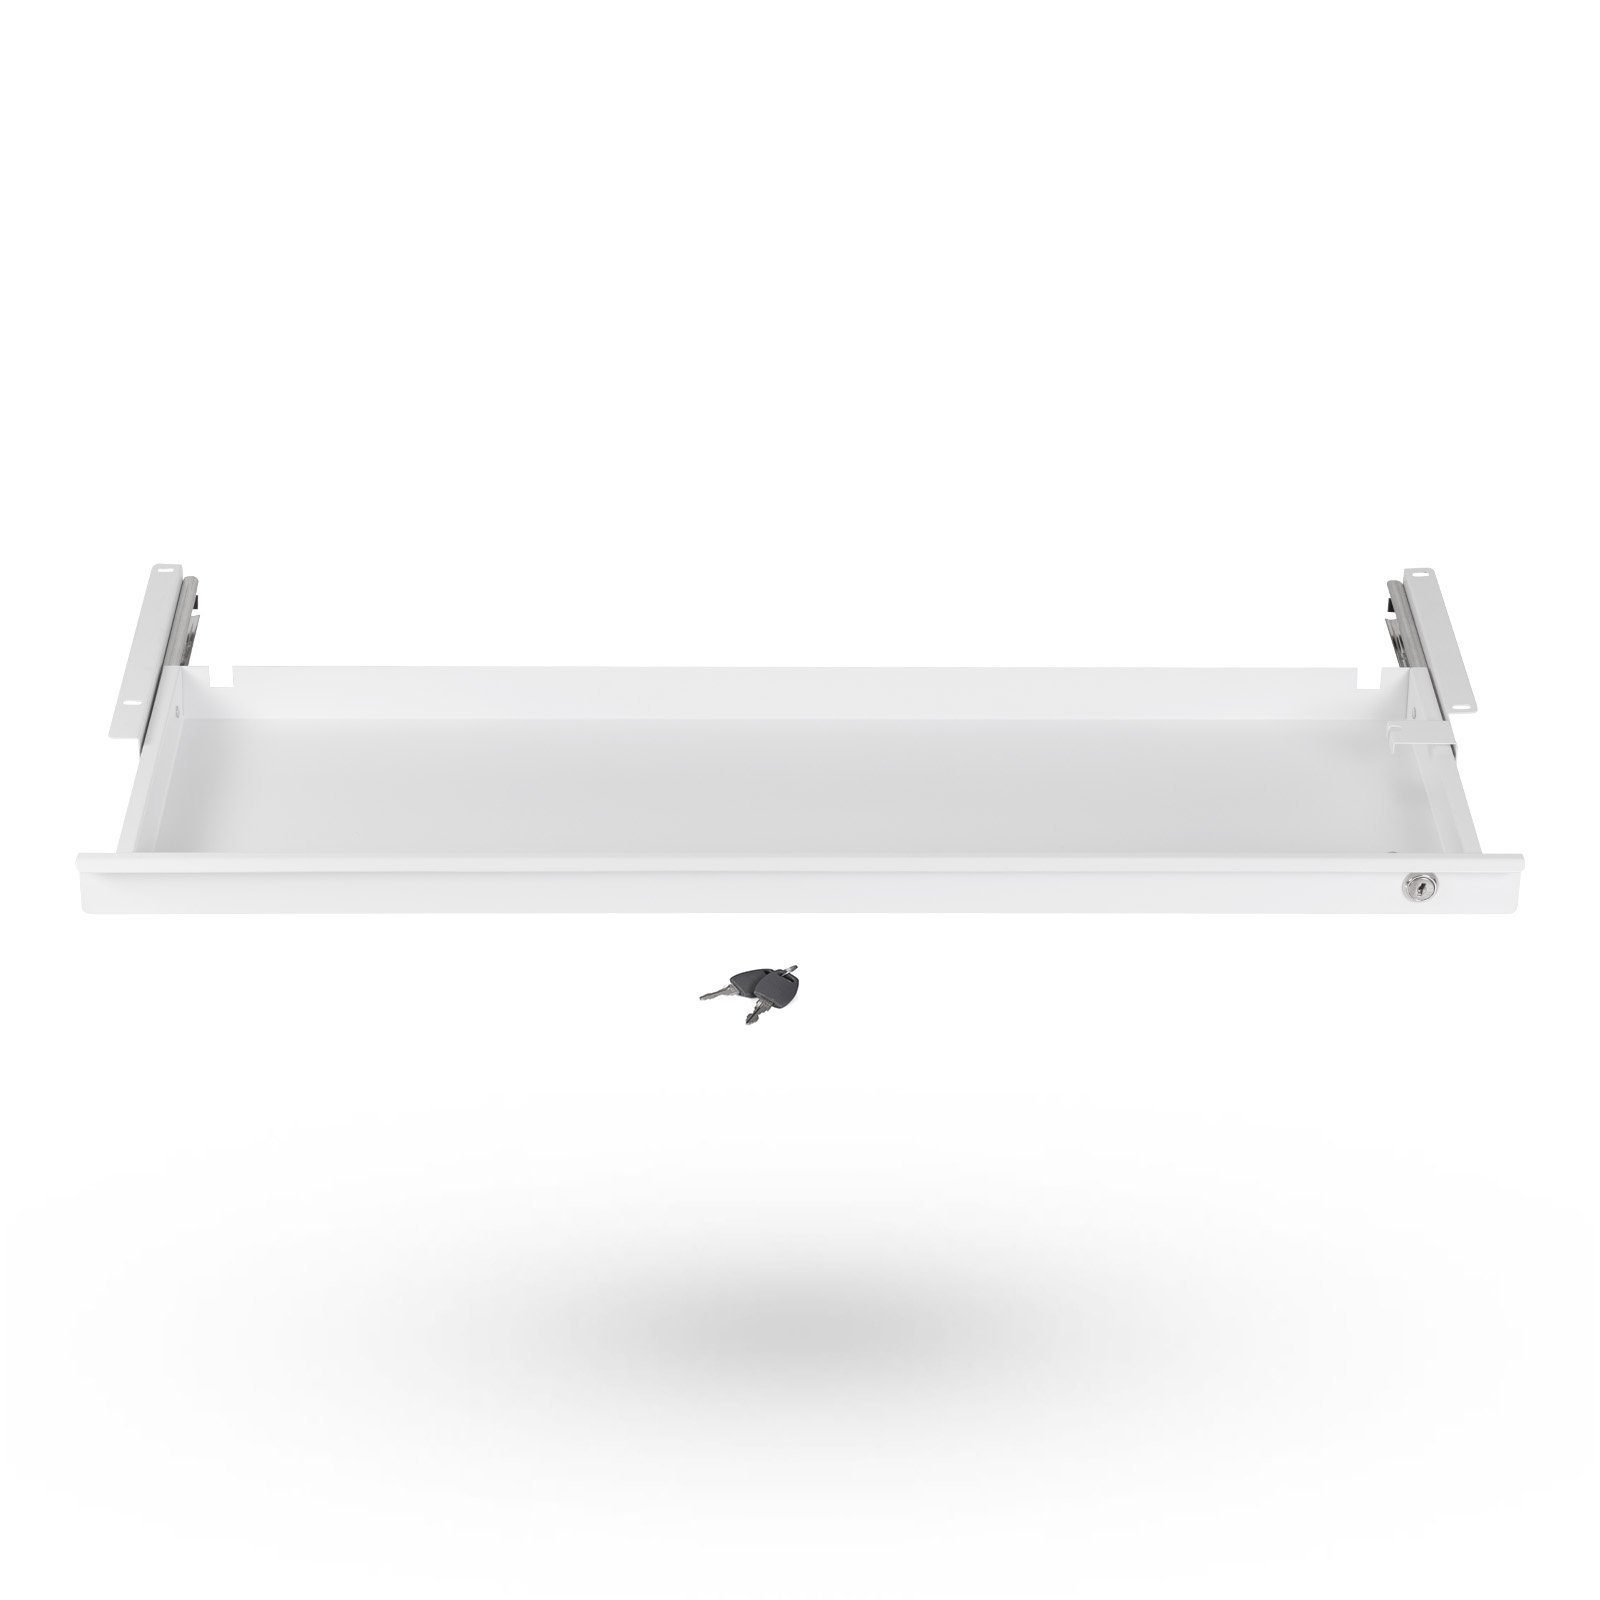 SO-TECH® Schublade Abschließbare Dokumentenschublade Unterbauschublade für Schreibtisch